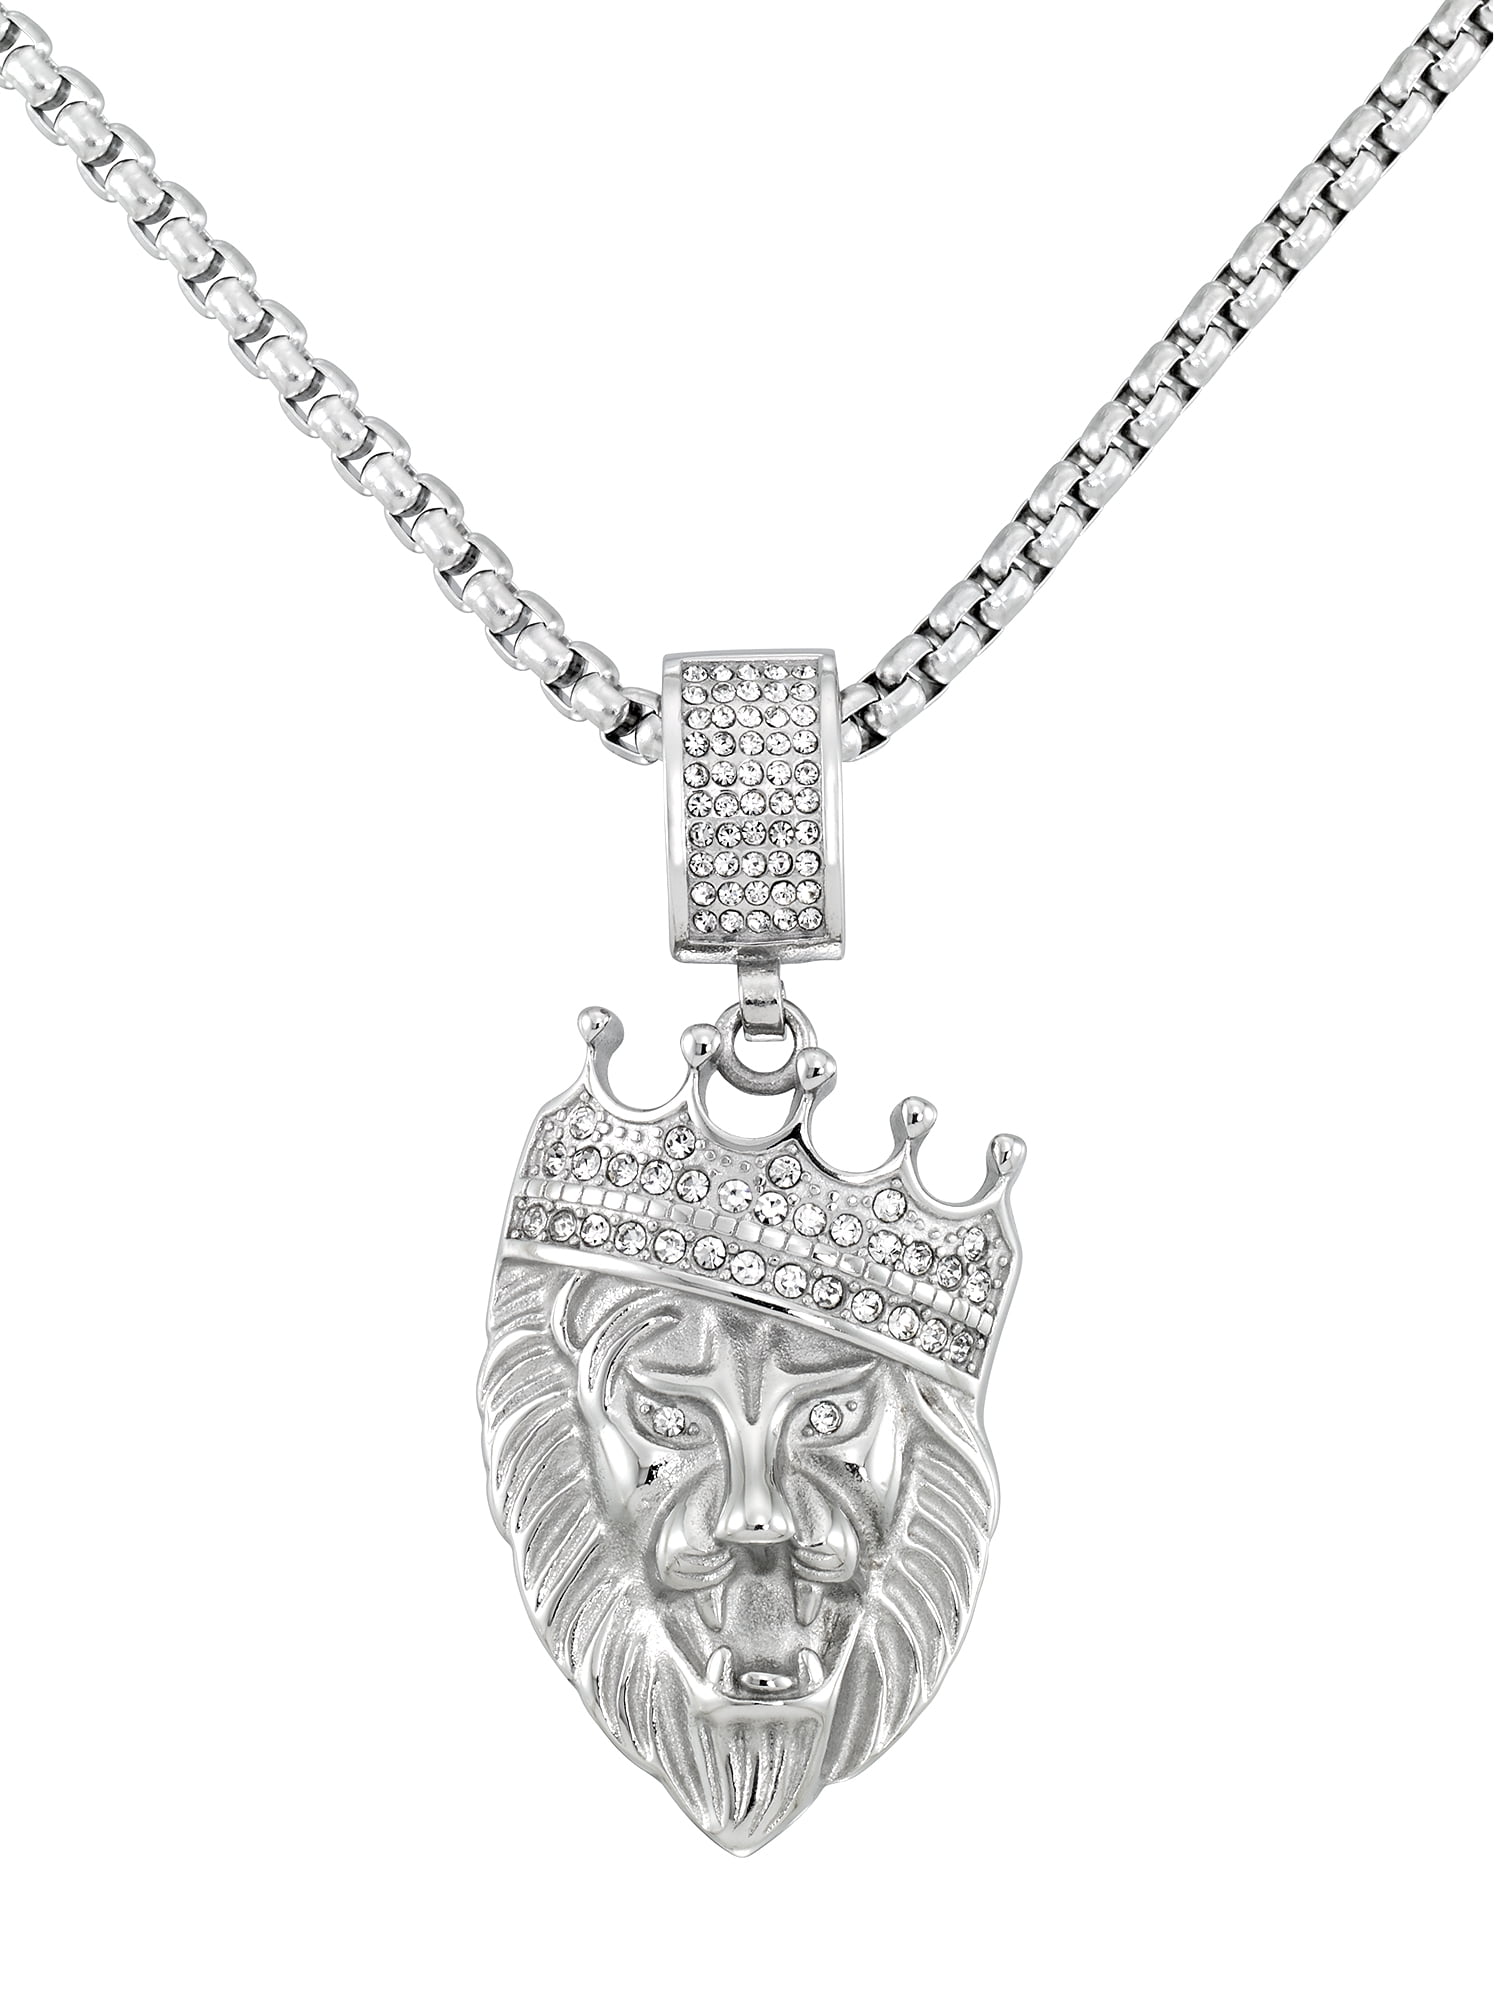 Gold Lion Crown Necklace Mens Pendant